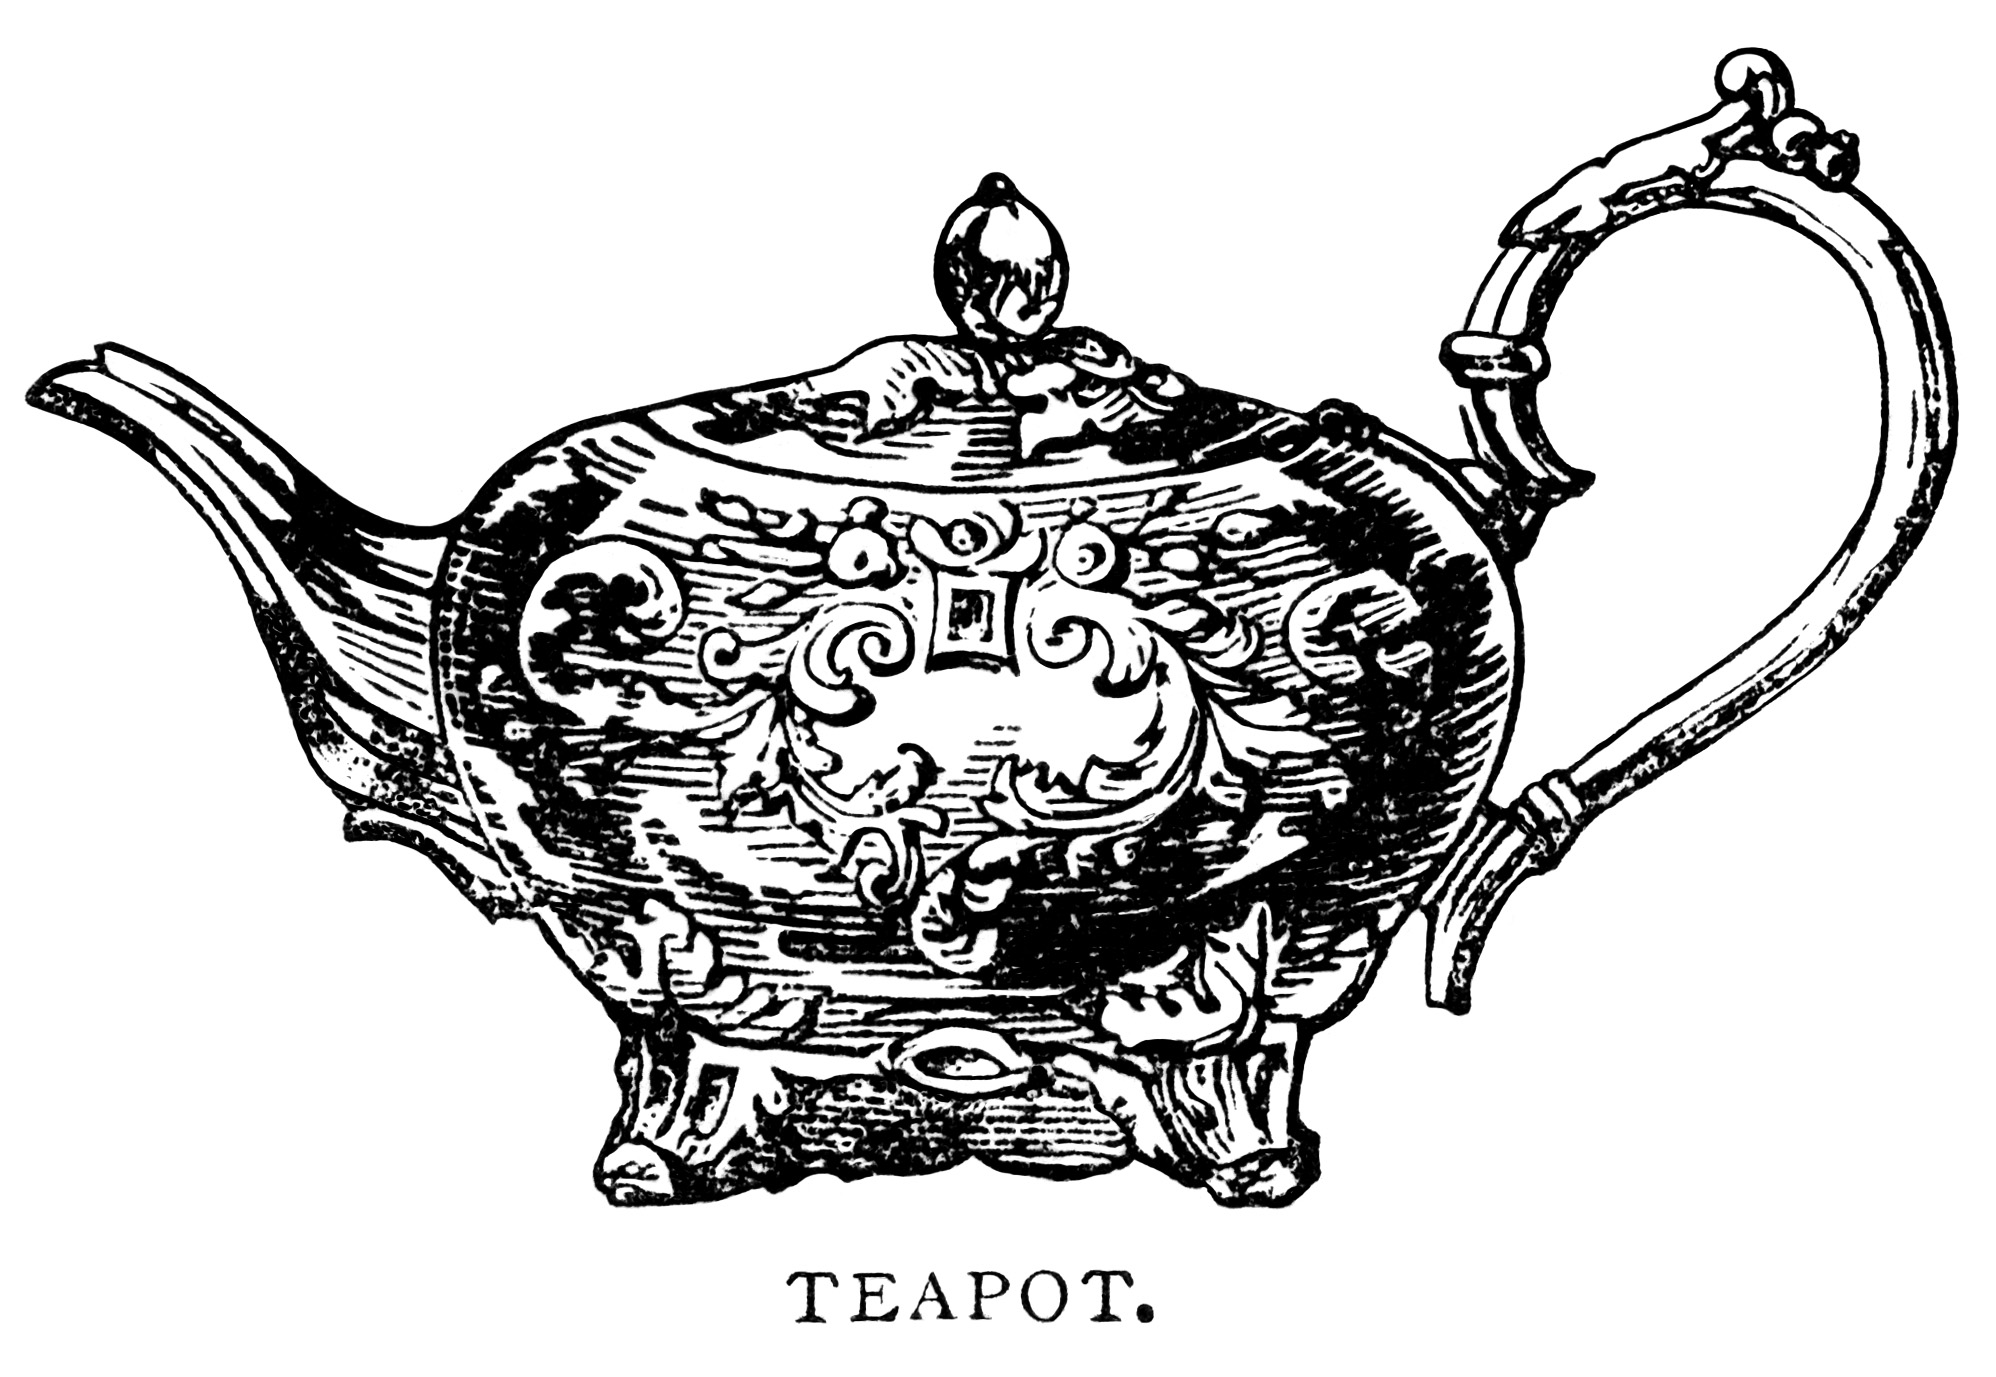 teapot clip art, black and white graphics, vintage tea pot printable, antique teapot illustration, vintage kitchen clipart